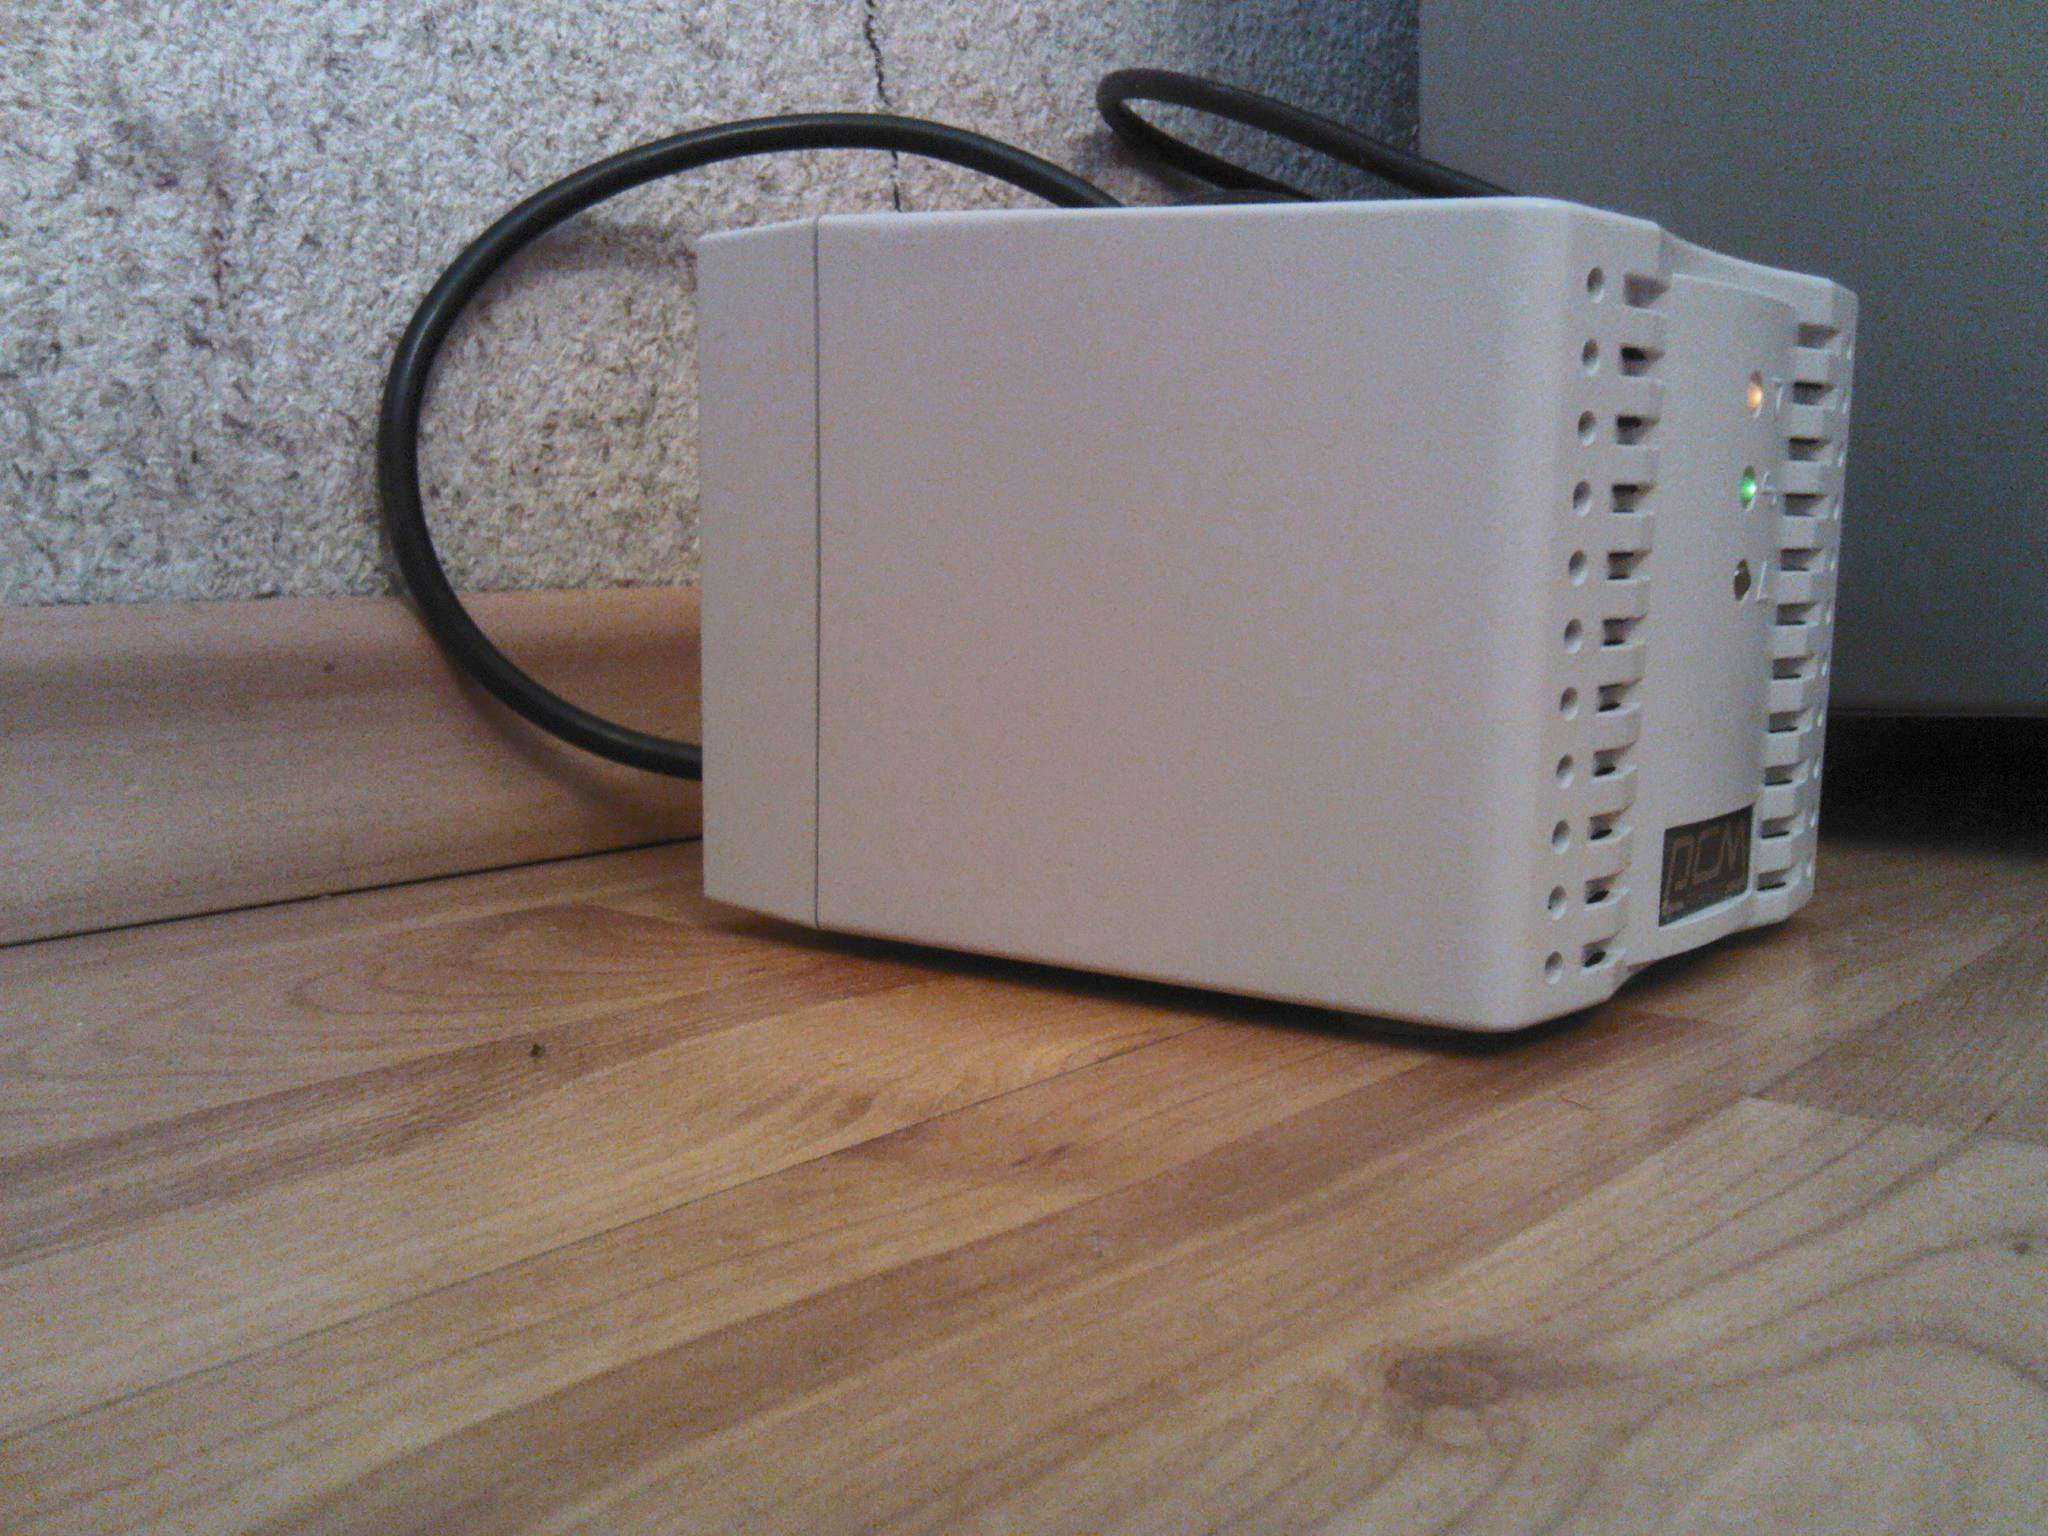 Powercom powercom tca-2000 (1315963) купить за 1990 руб в екатеринбурге, отзывы, видео обзоры